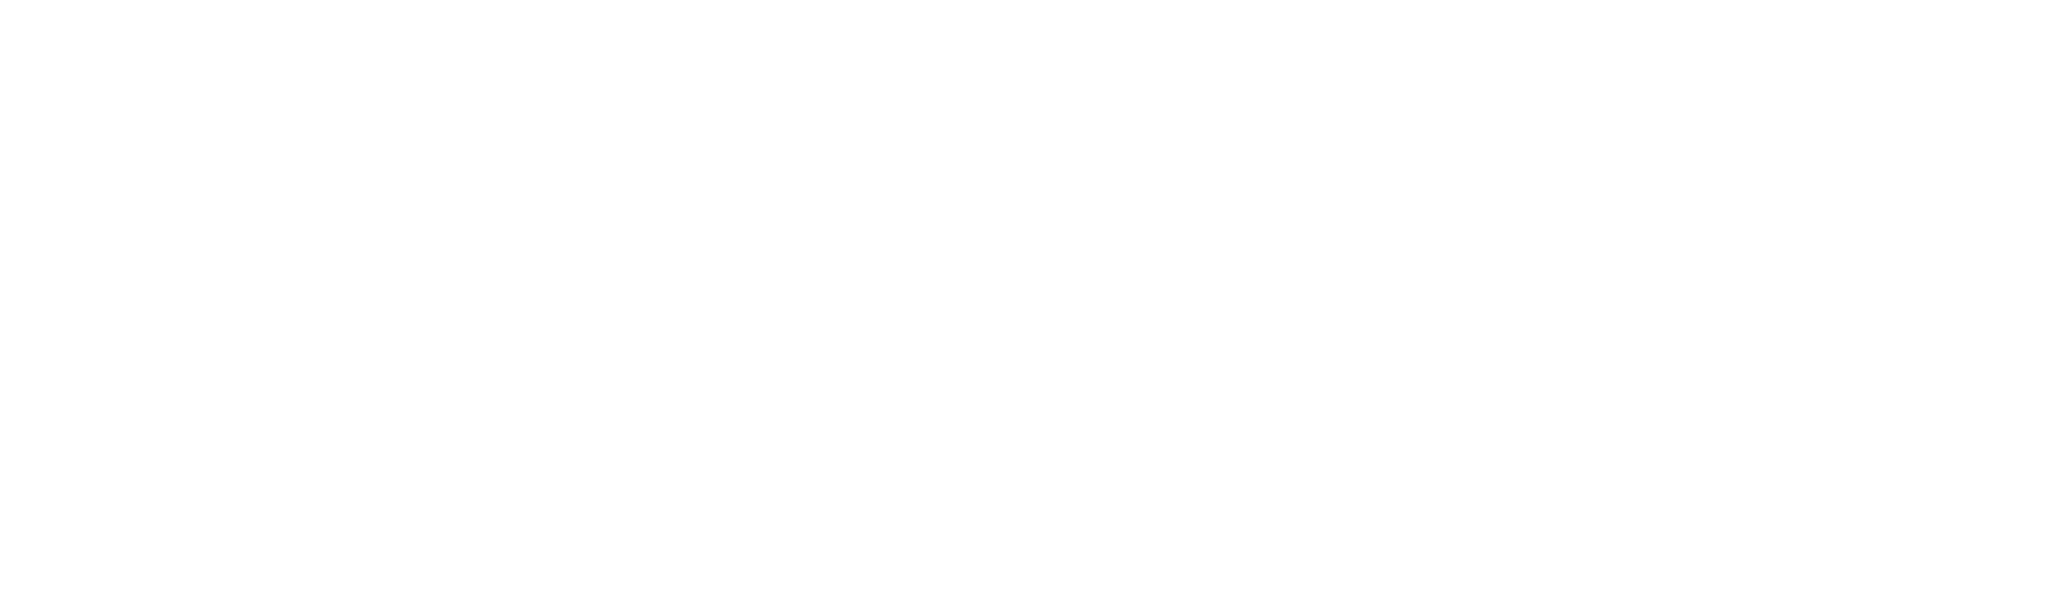 team signatures